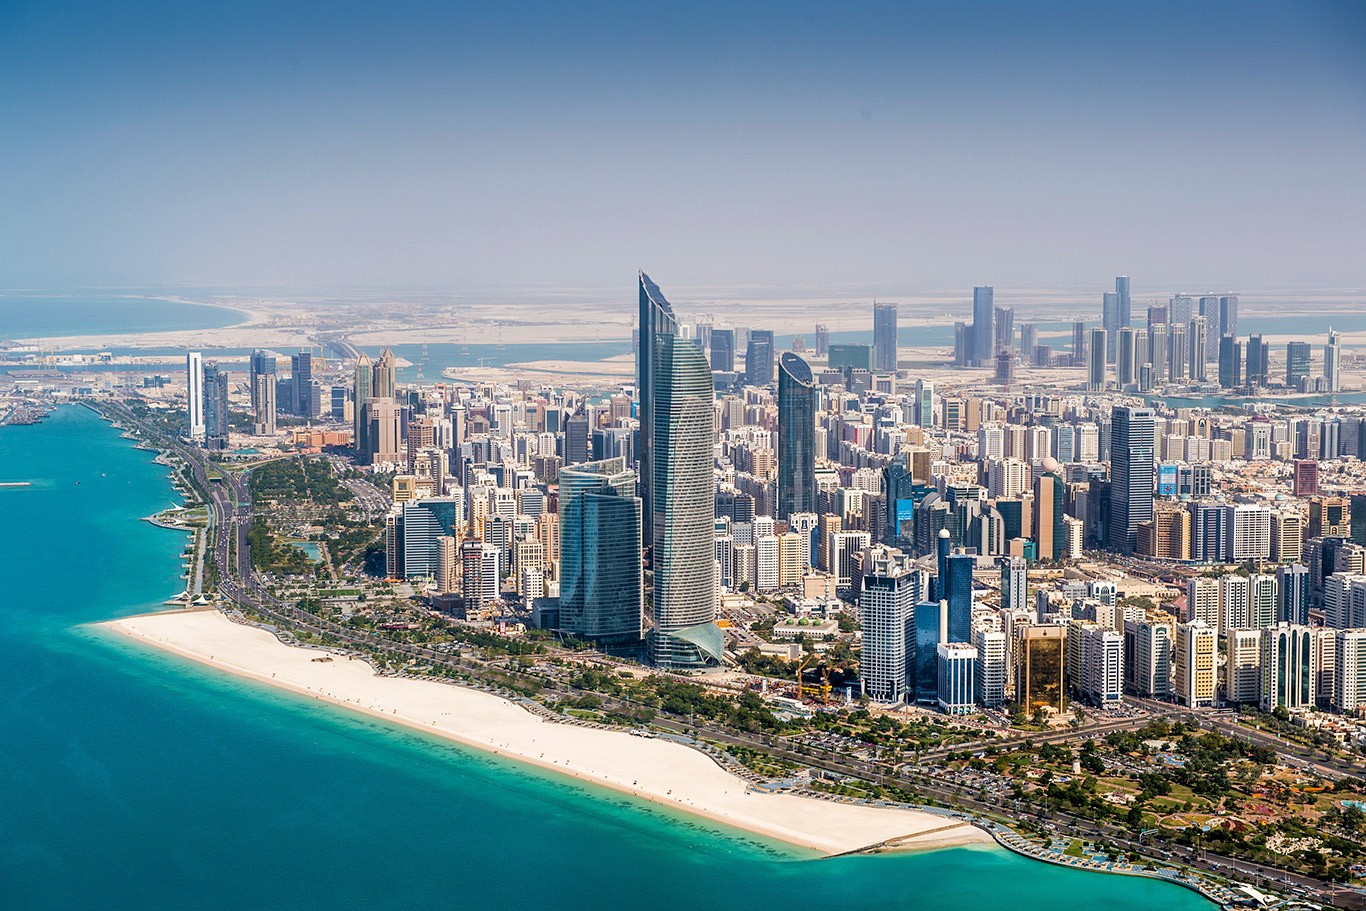 UAE shore excursions